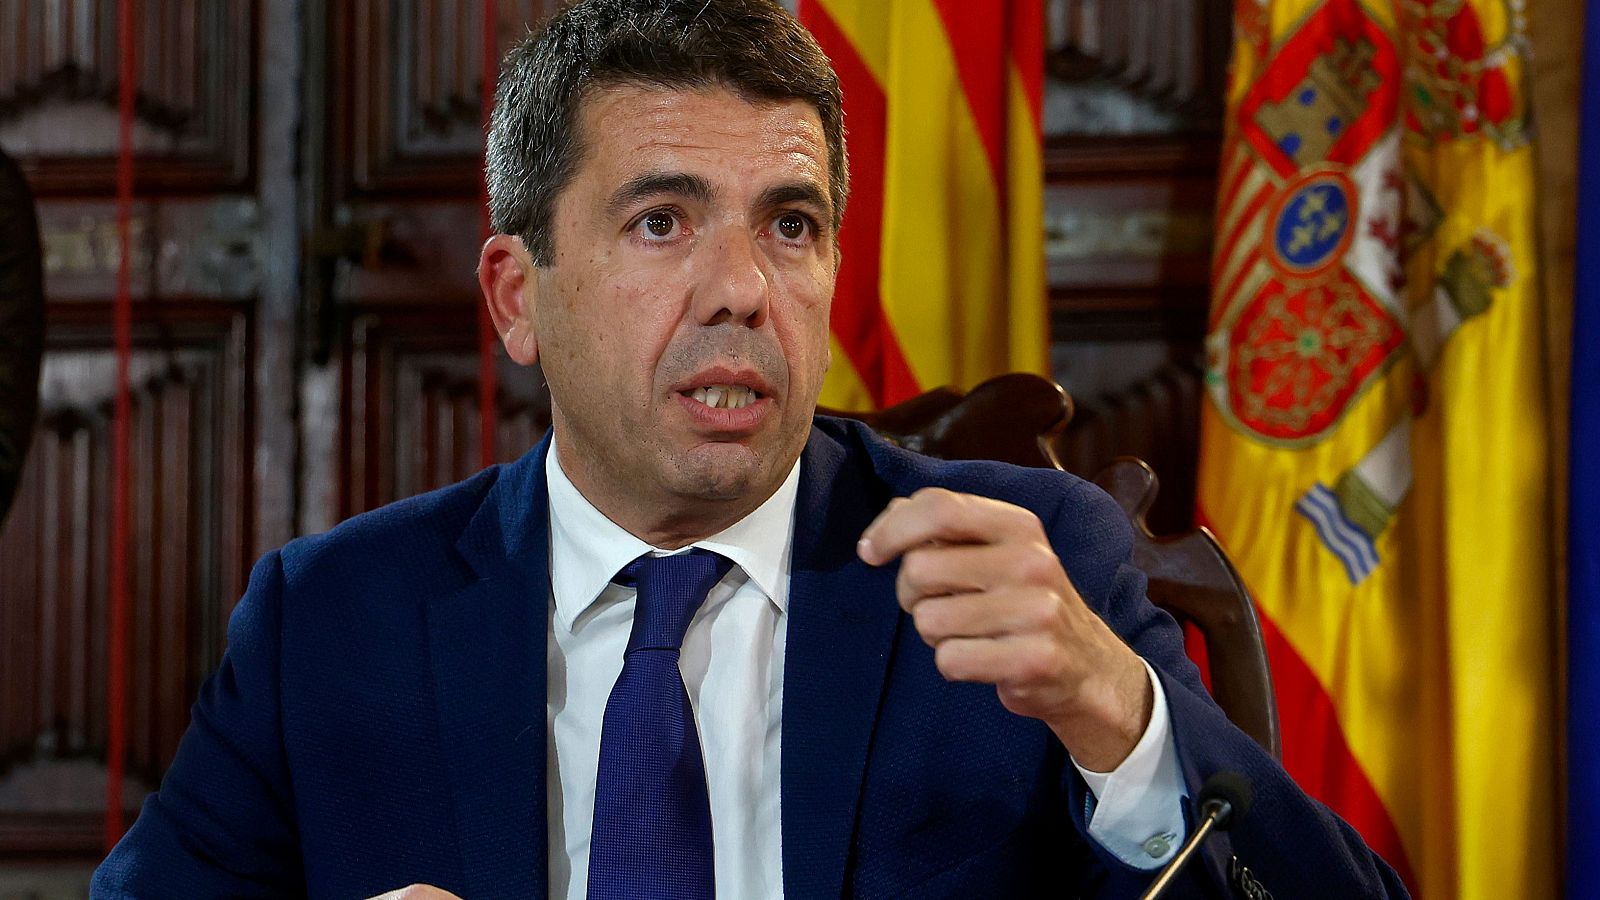 El president de la Generalitat, Carlos Mazón, preside el Pleno extraordinario del Consell